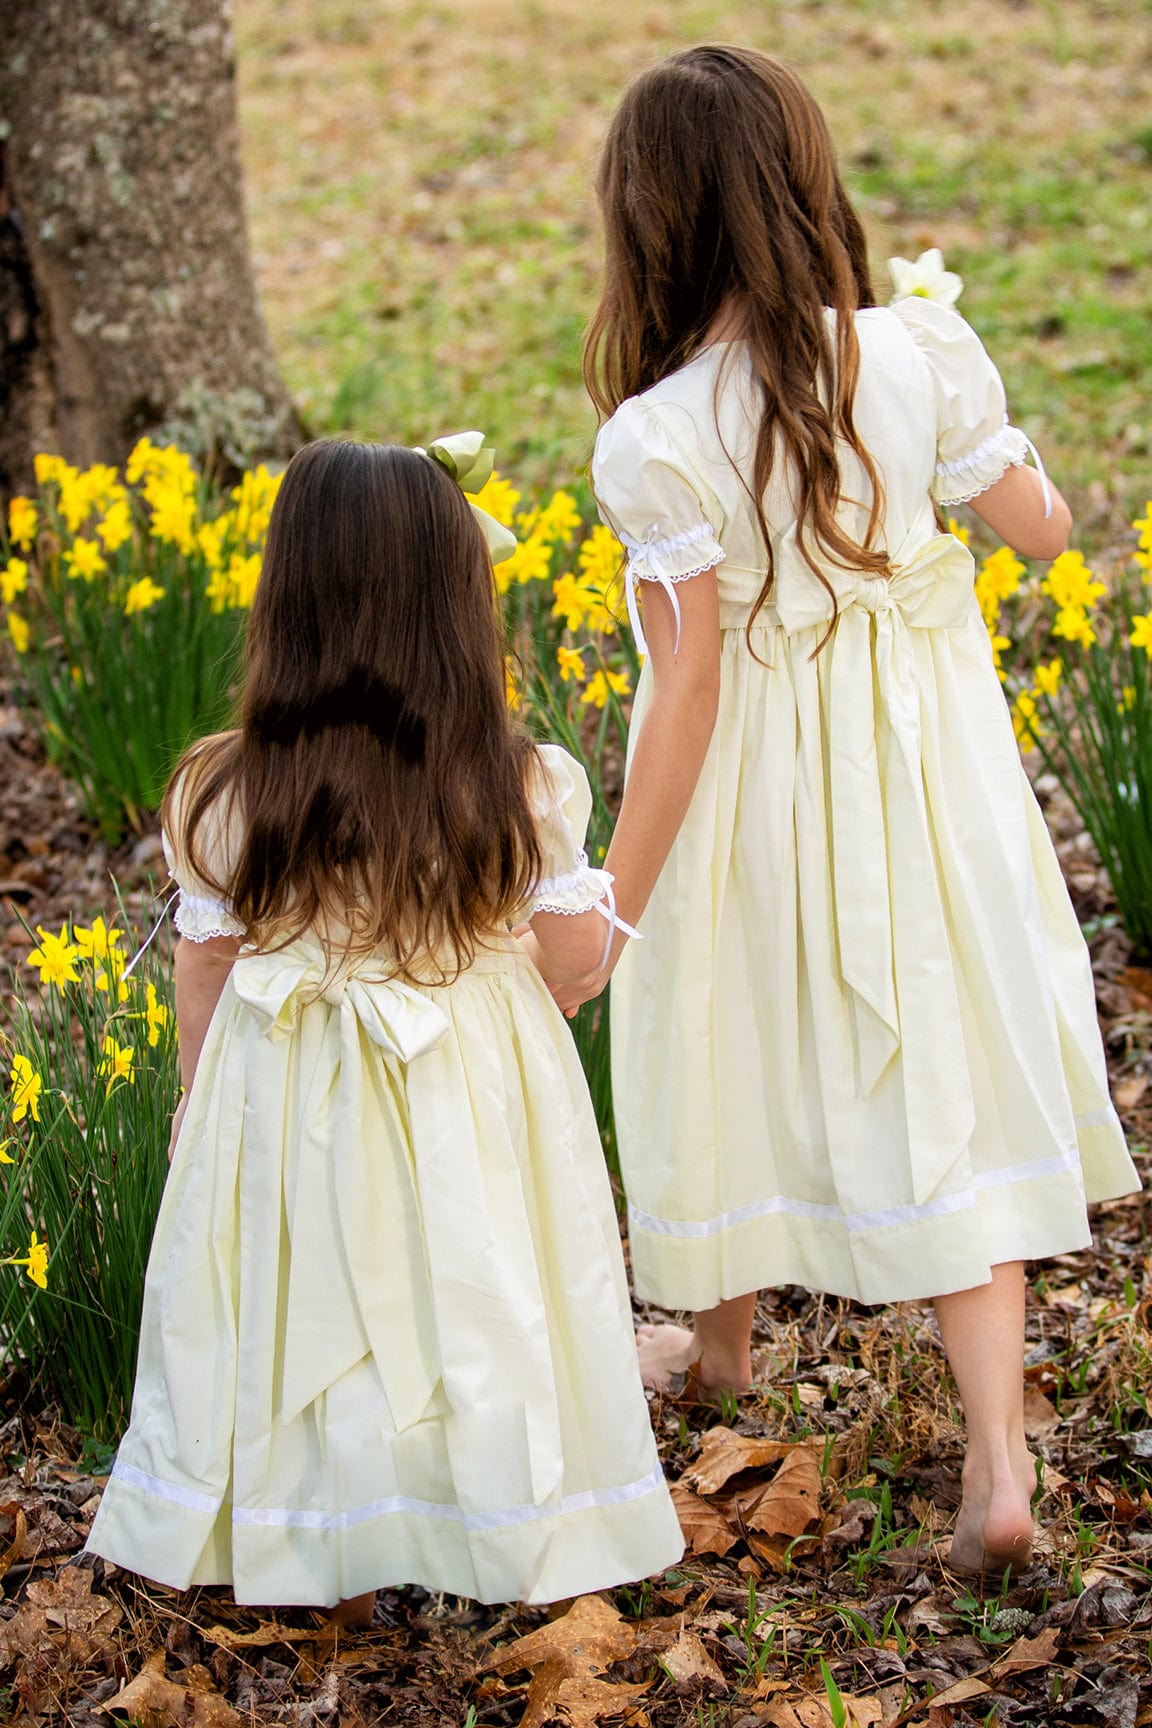 Strasburg Children's Smocked Flower Girl Dress